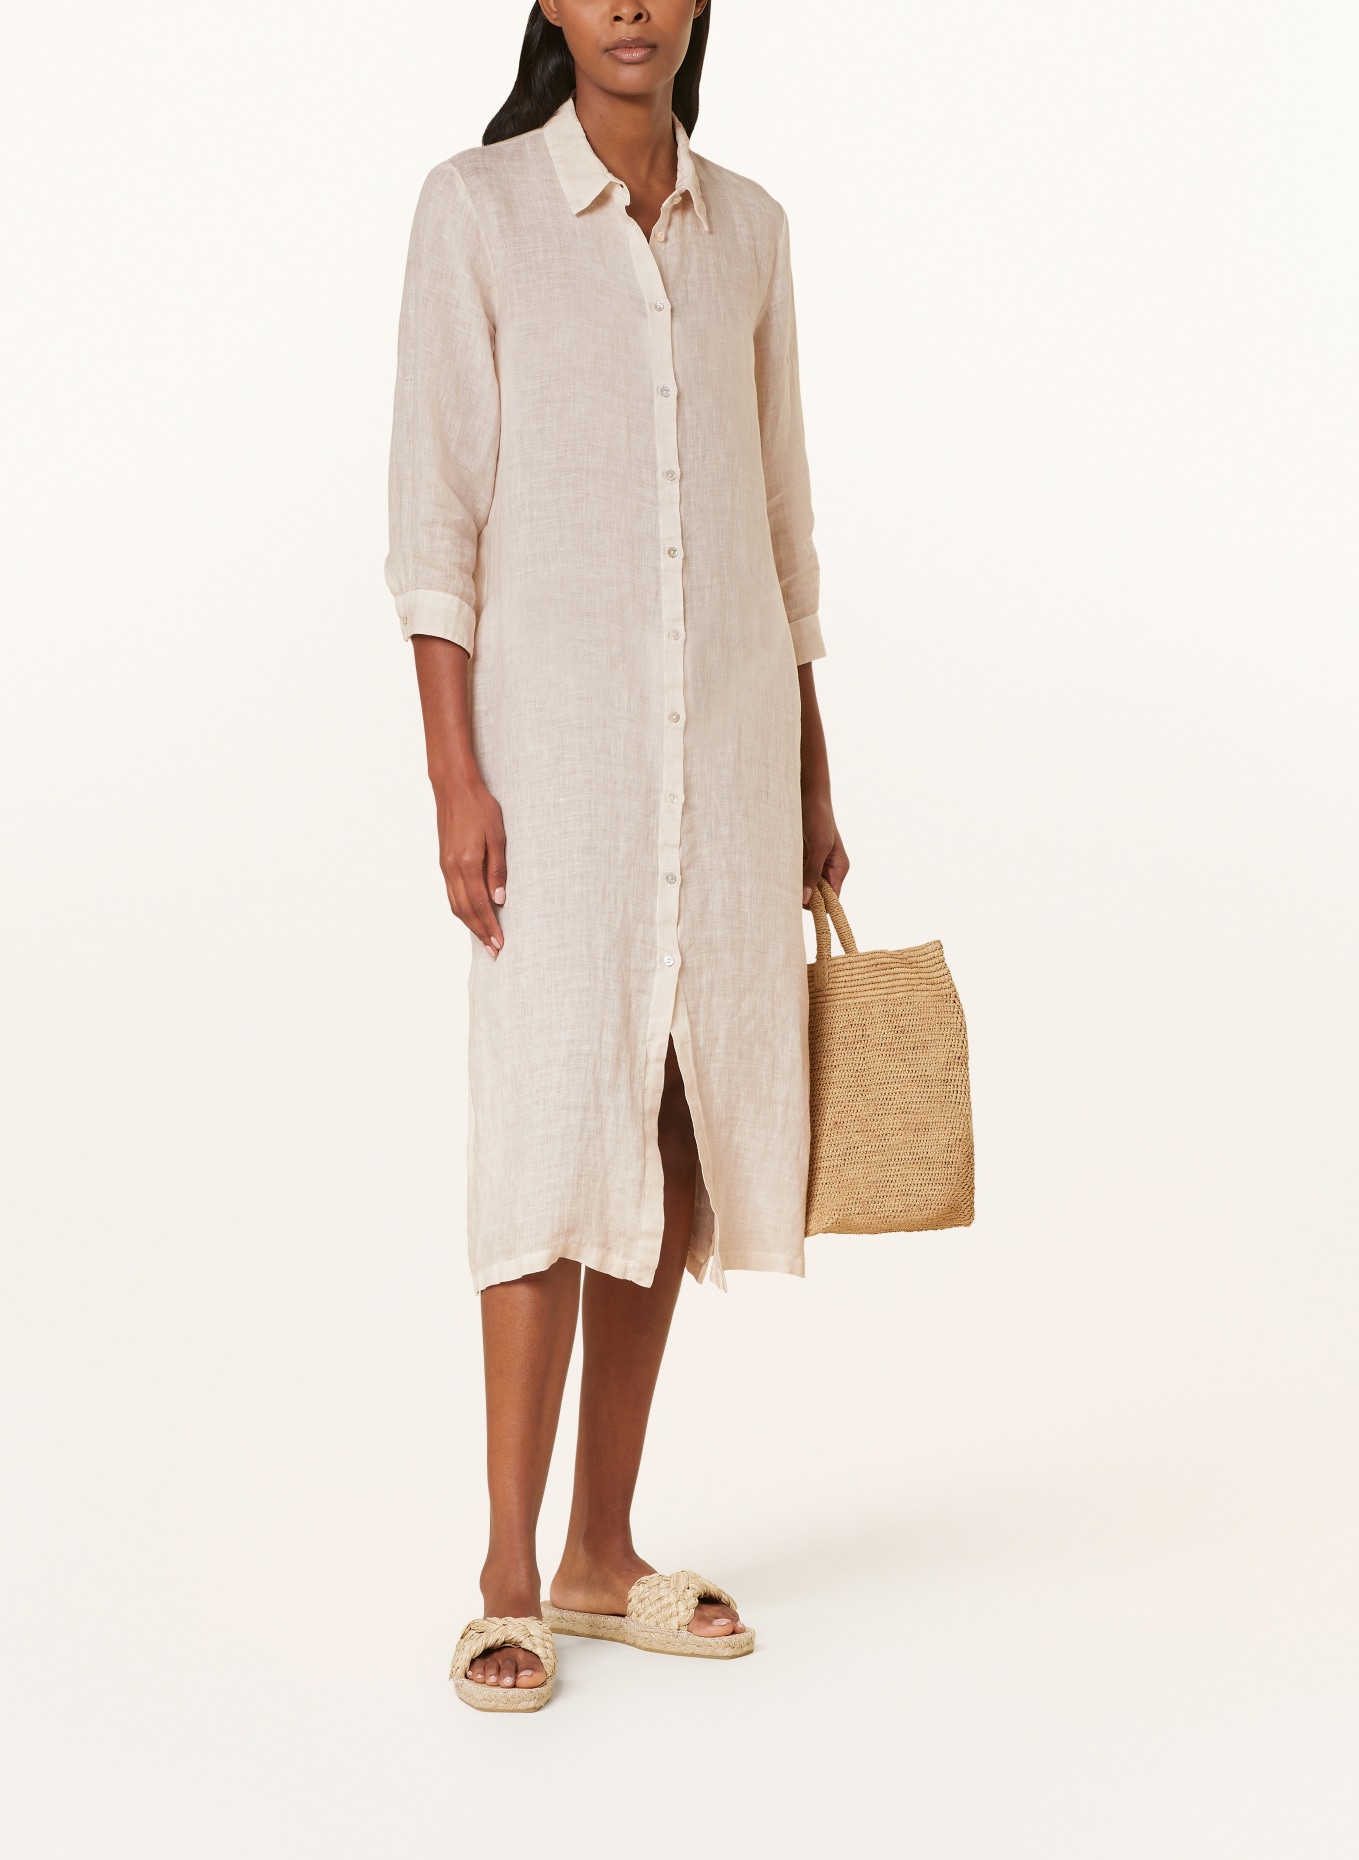 120%lino Beach dress made of linen, Color: CREAM (Image 2)